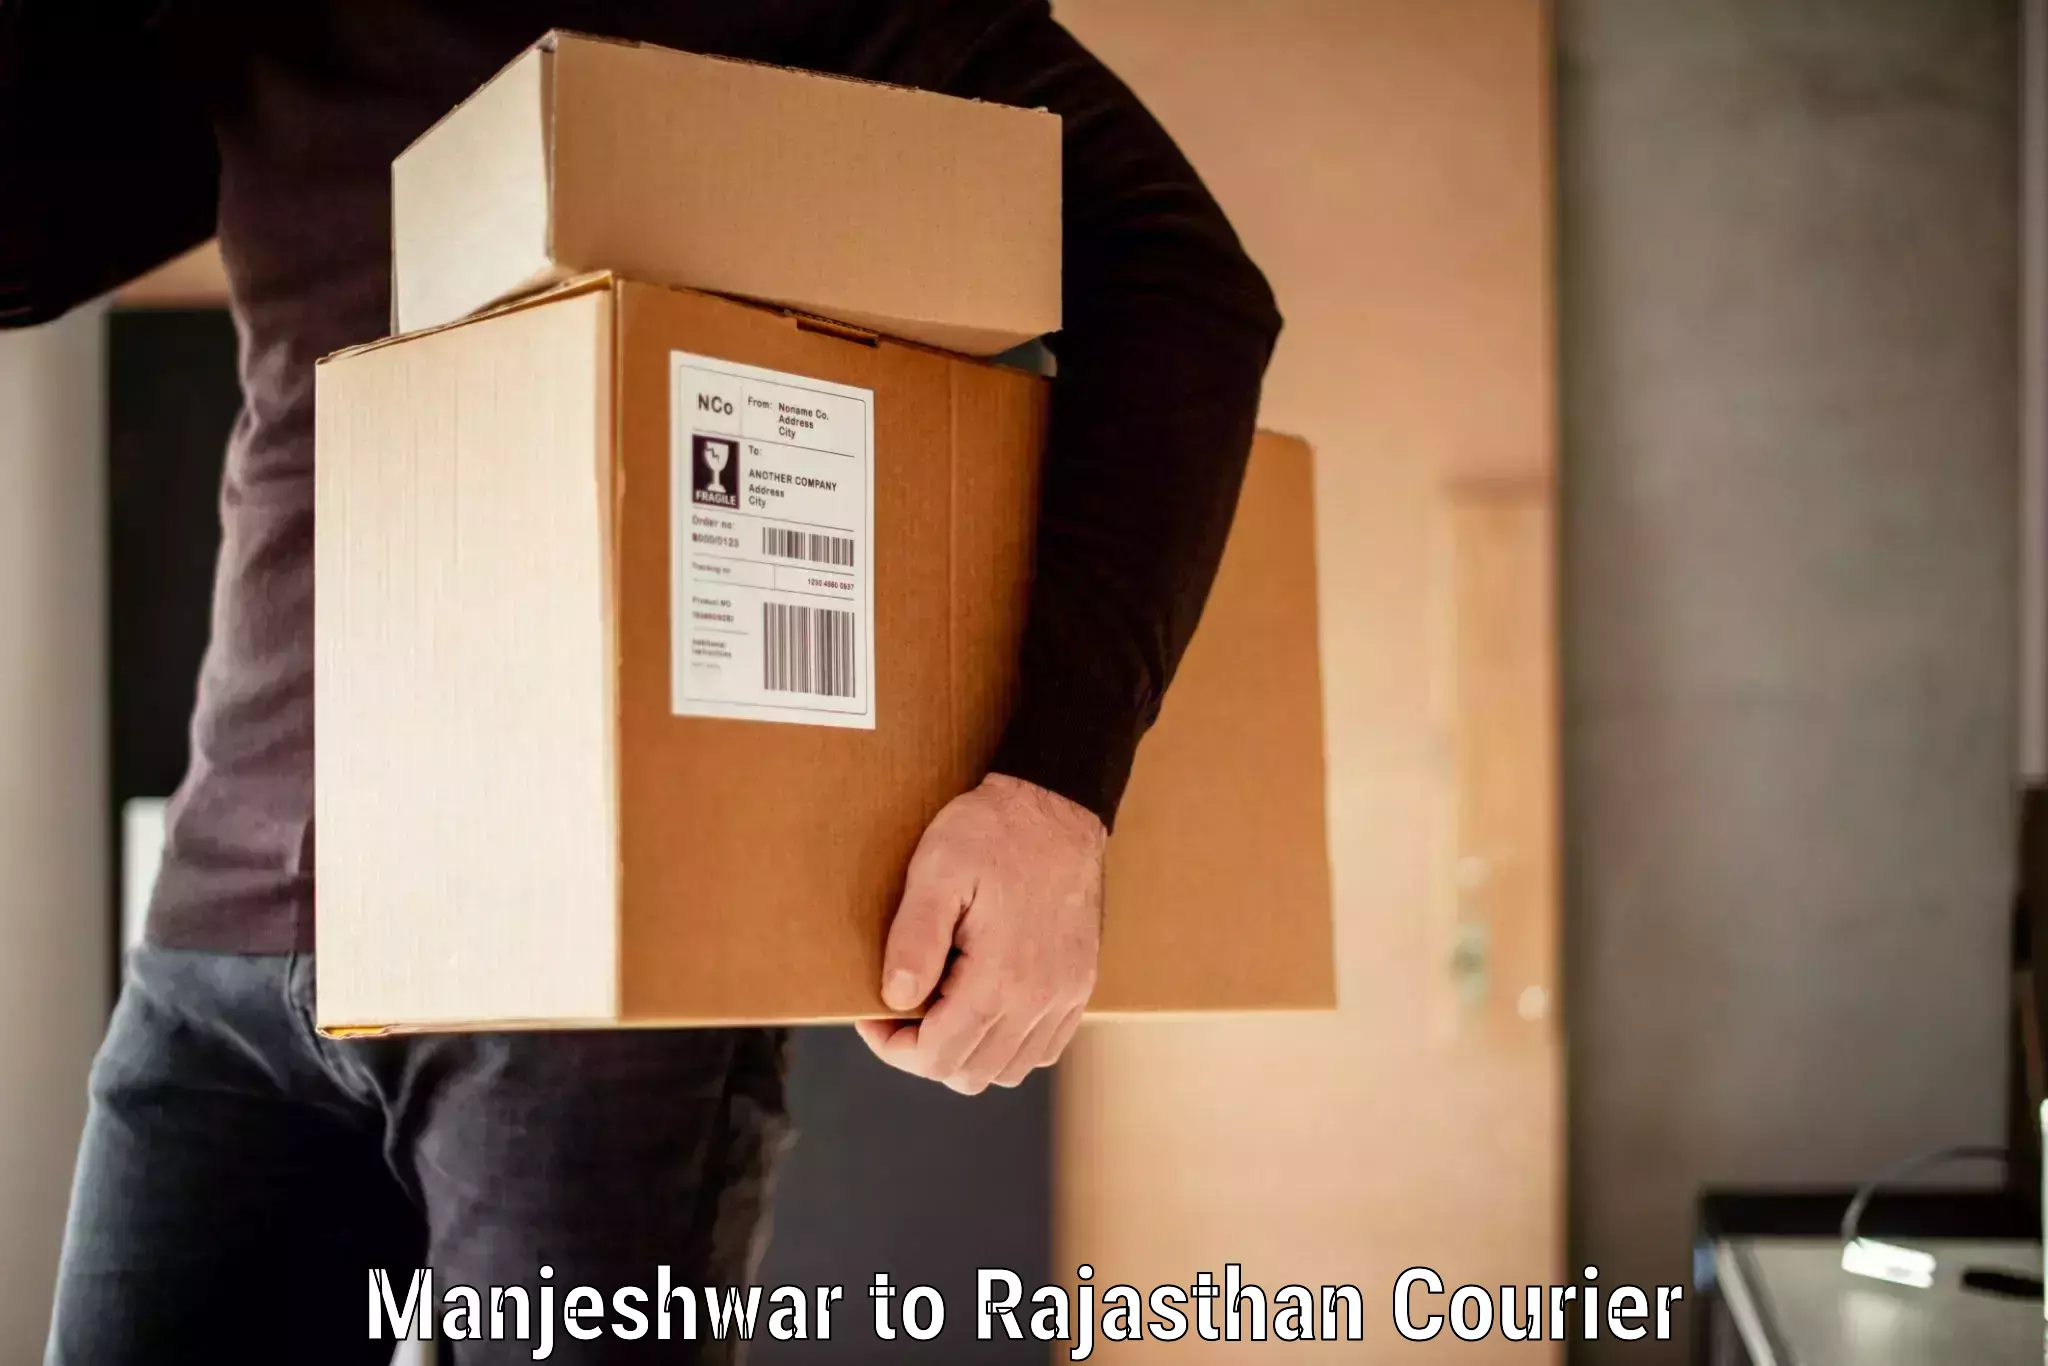 Baggage transport professionals Manjeshwar to Rajasthan